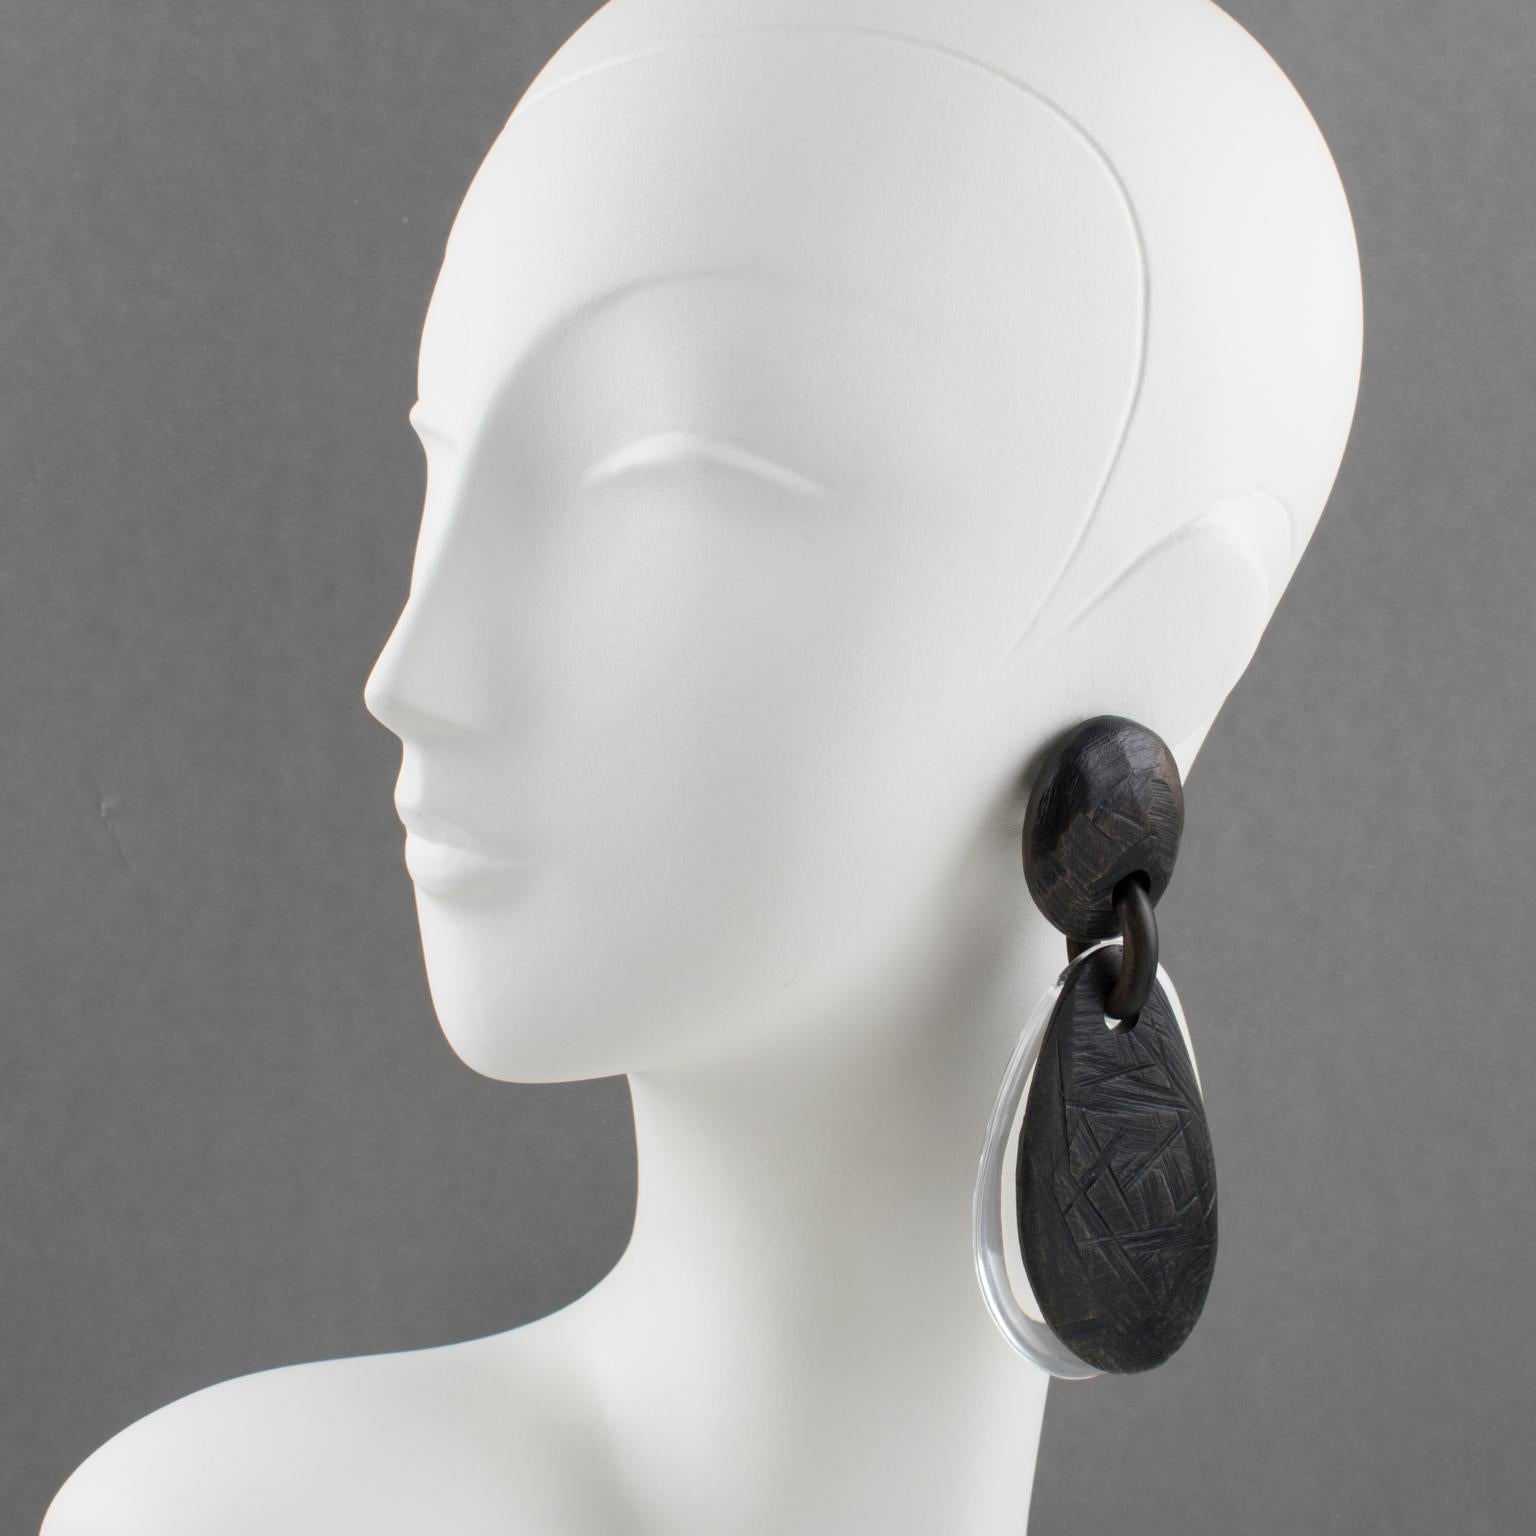 Diese spektakulären, übergroßen Ohrringe von Gerda Lyngaard für Monies bestehen aus einem baumelnden Kieselstein in Form einer doppelten Träne aus transparentem Acryl oder Lucite und Ebenholz mit geschnitzter Stammesstruktur. Die Stücke sind auf den